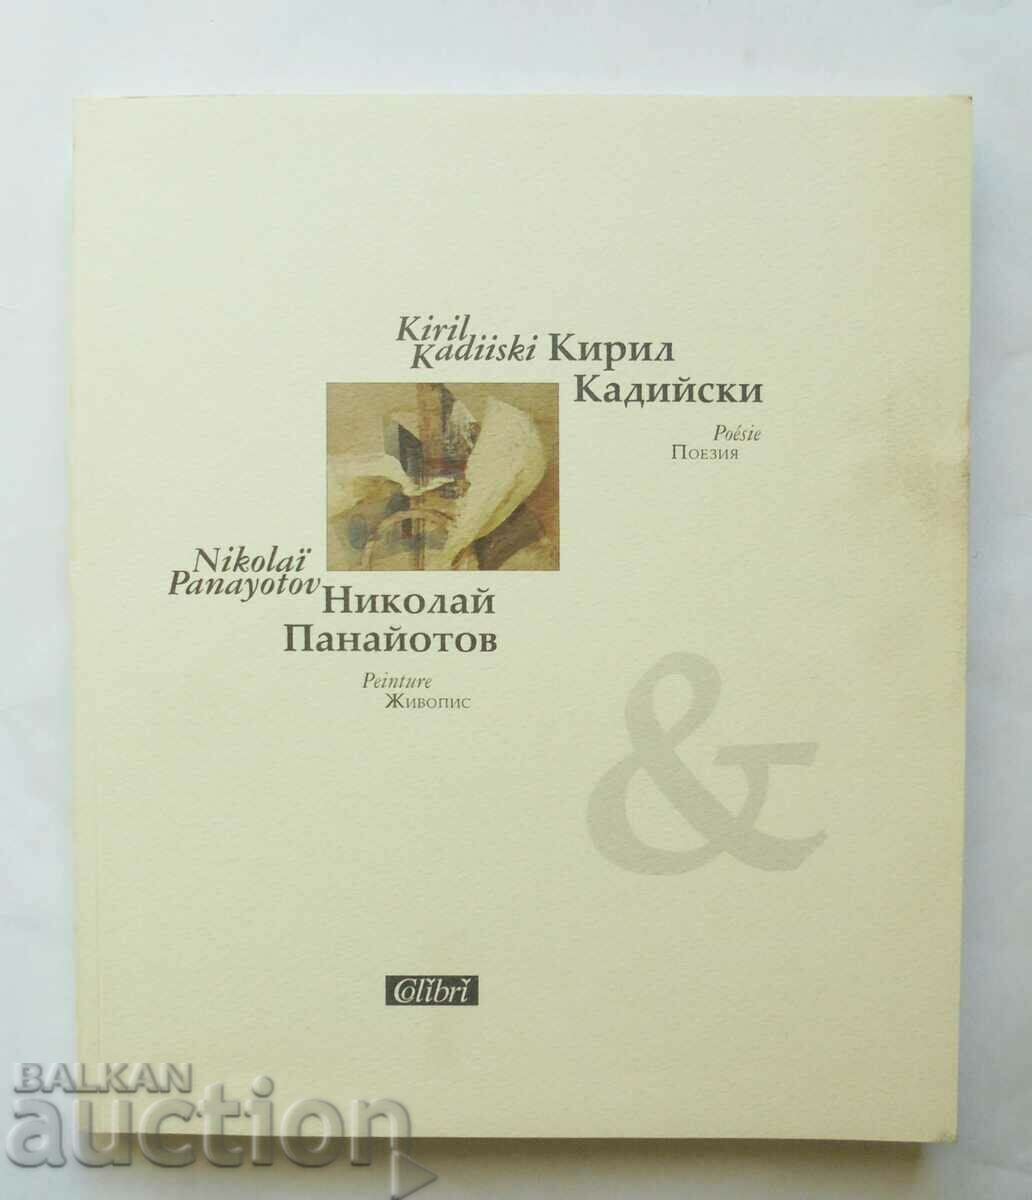 Poetry. Painting - Kiril Kadiyski, Nikolay Panayotov 2002